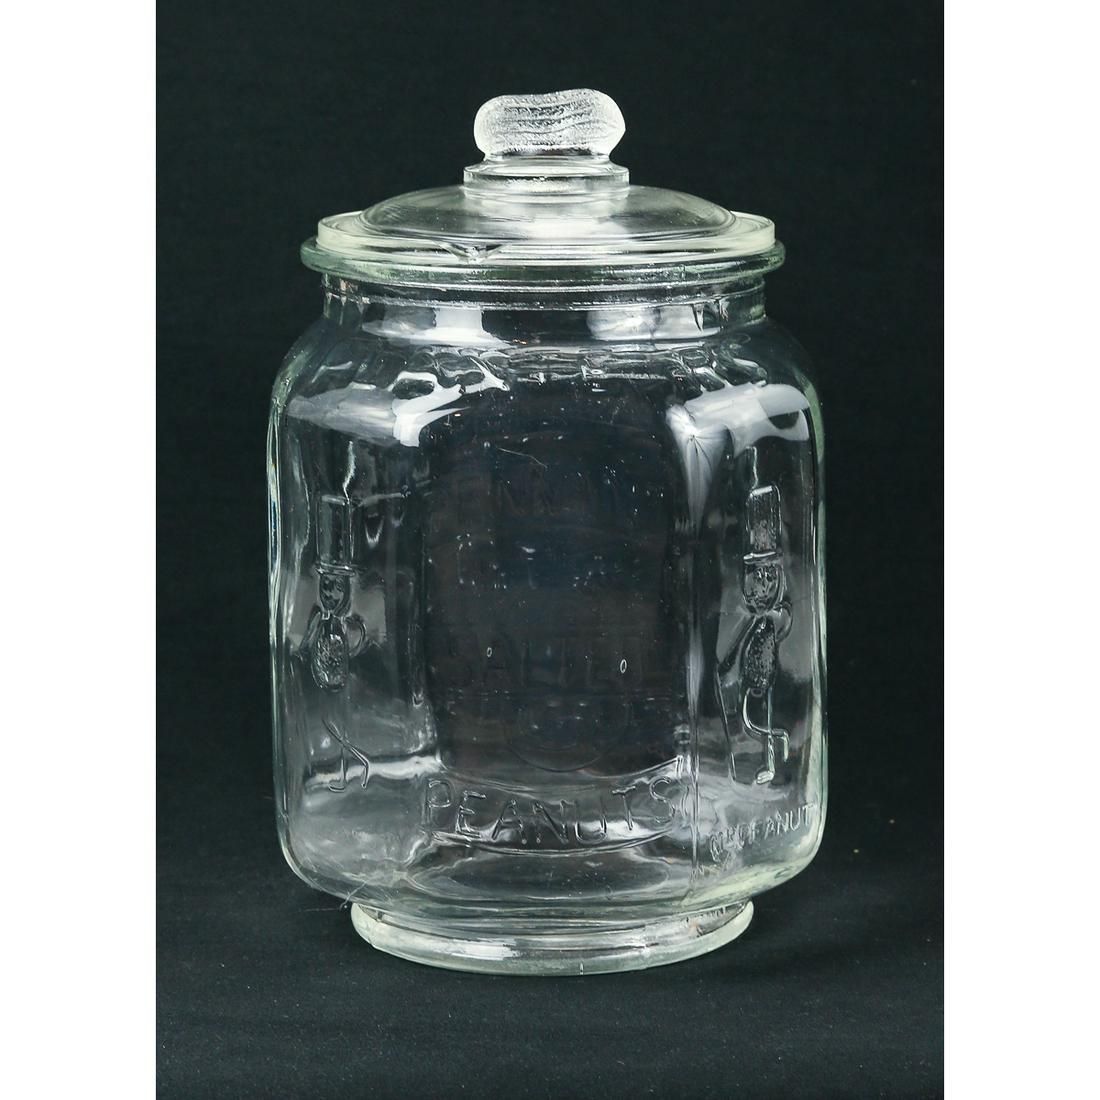 Vintage Planters Salted Peanut Jar Vintage Planters salted peanut jar with all t&hellip;